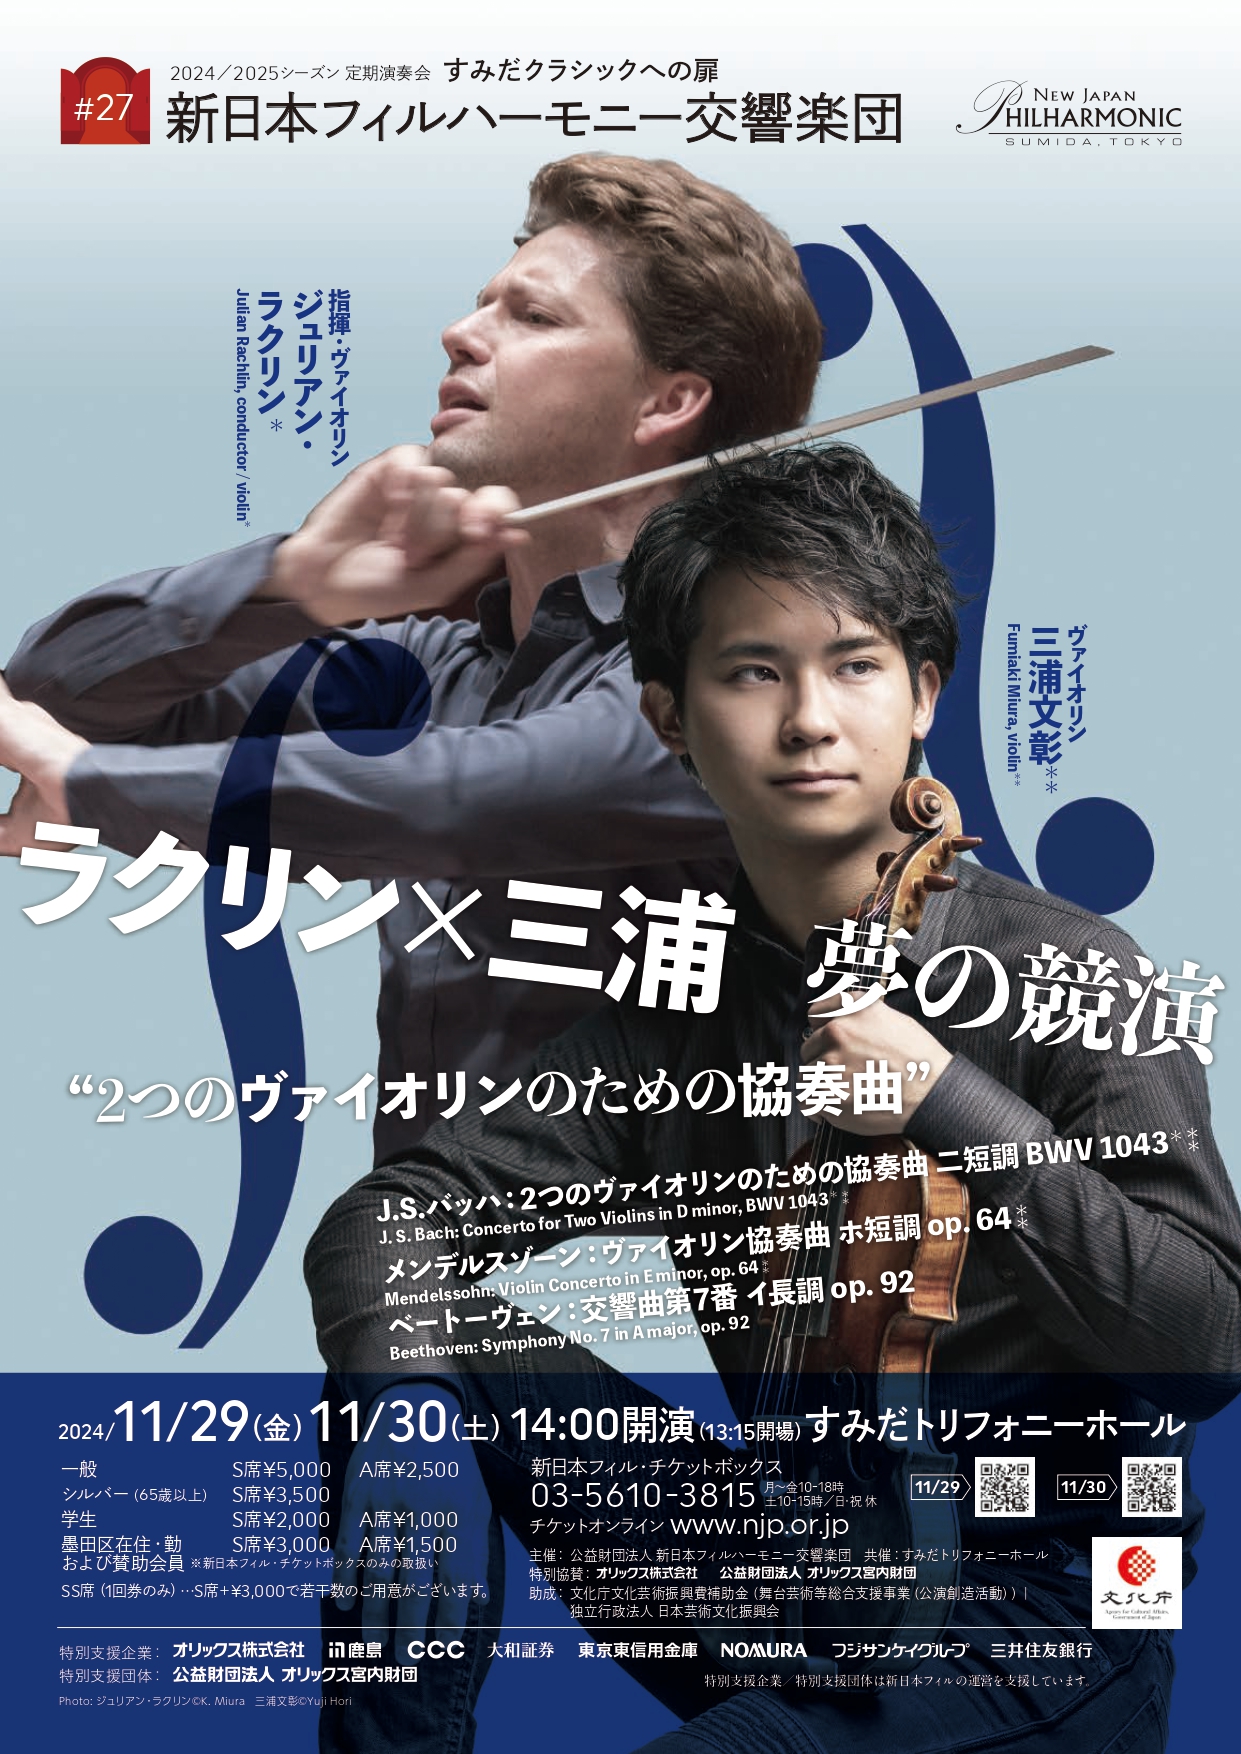 新日本フィルハーモニー交響楽団すみだクラシックへの扉 #27のフライヤー画像